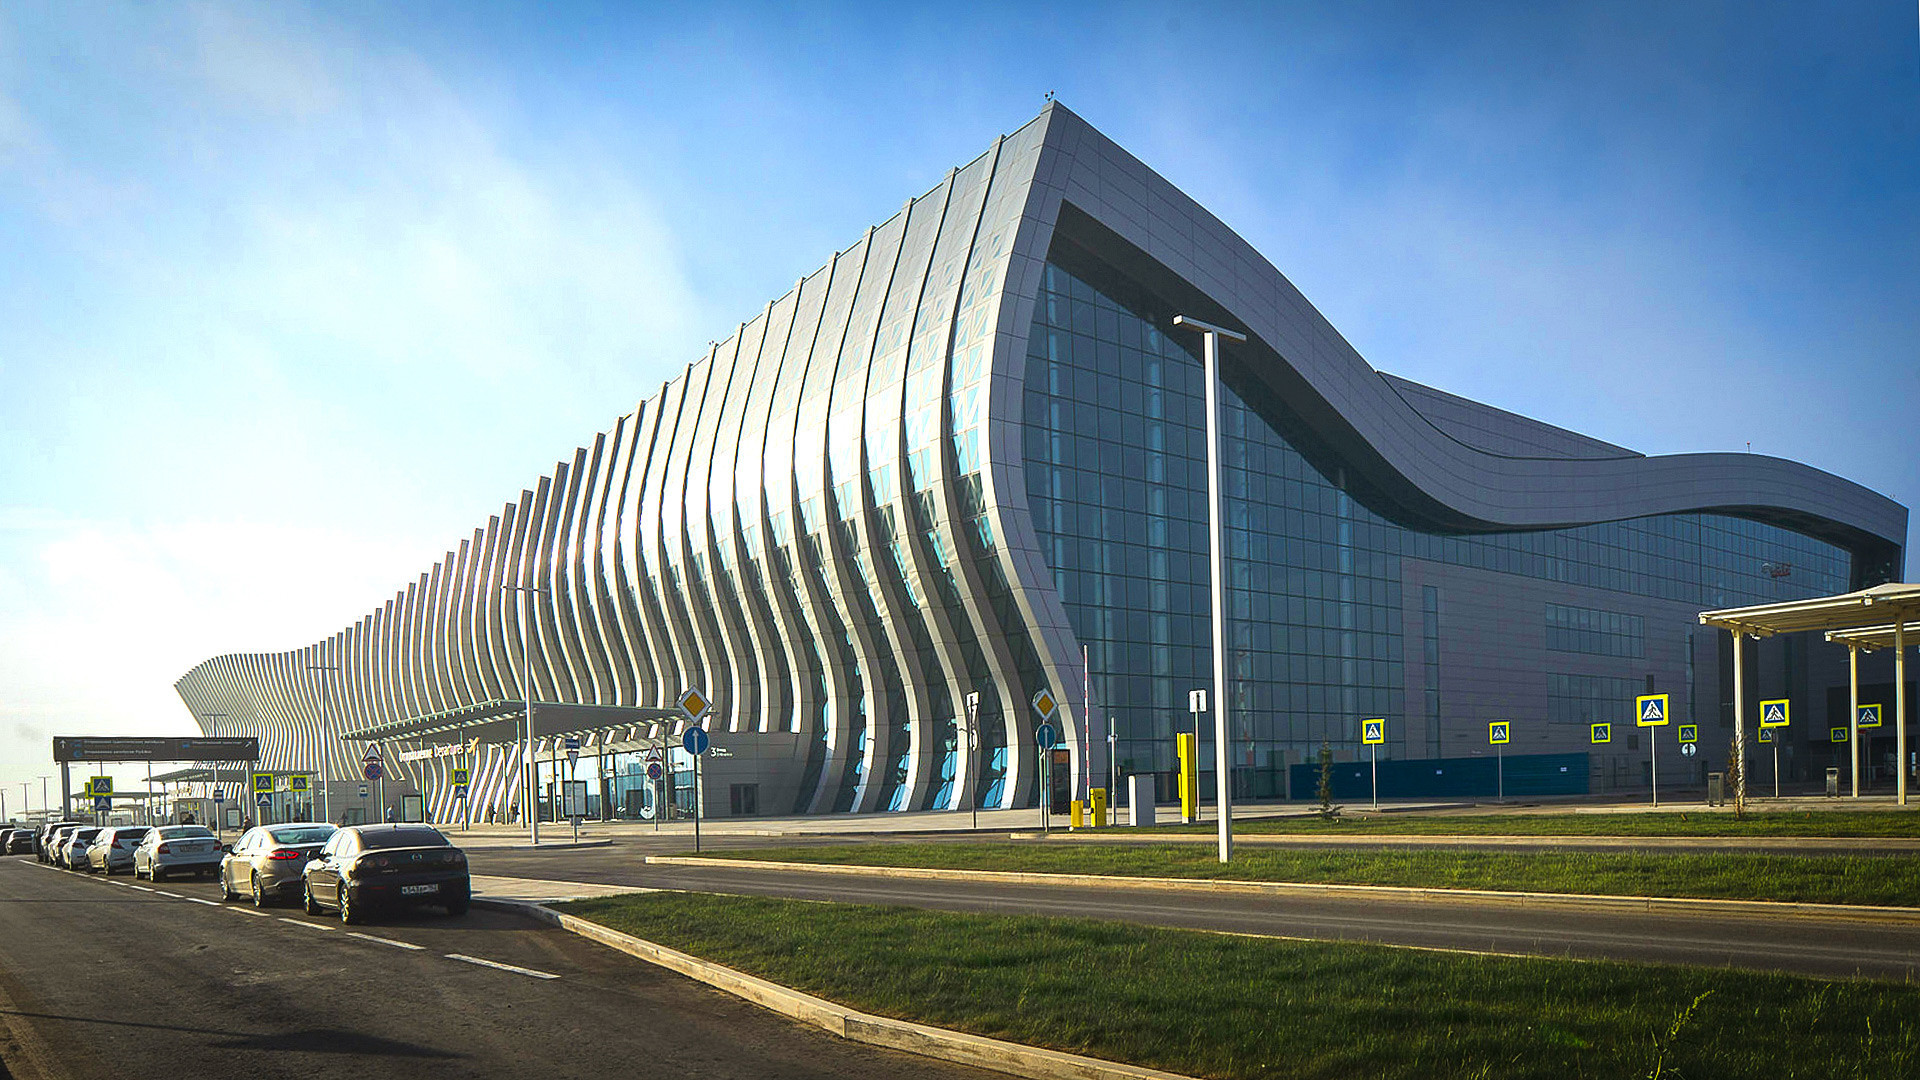 Novi terminal međunarodne zračne luke "Simferopolj", Krim.

